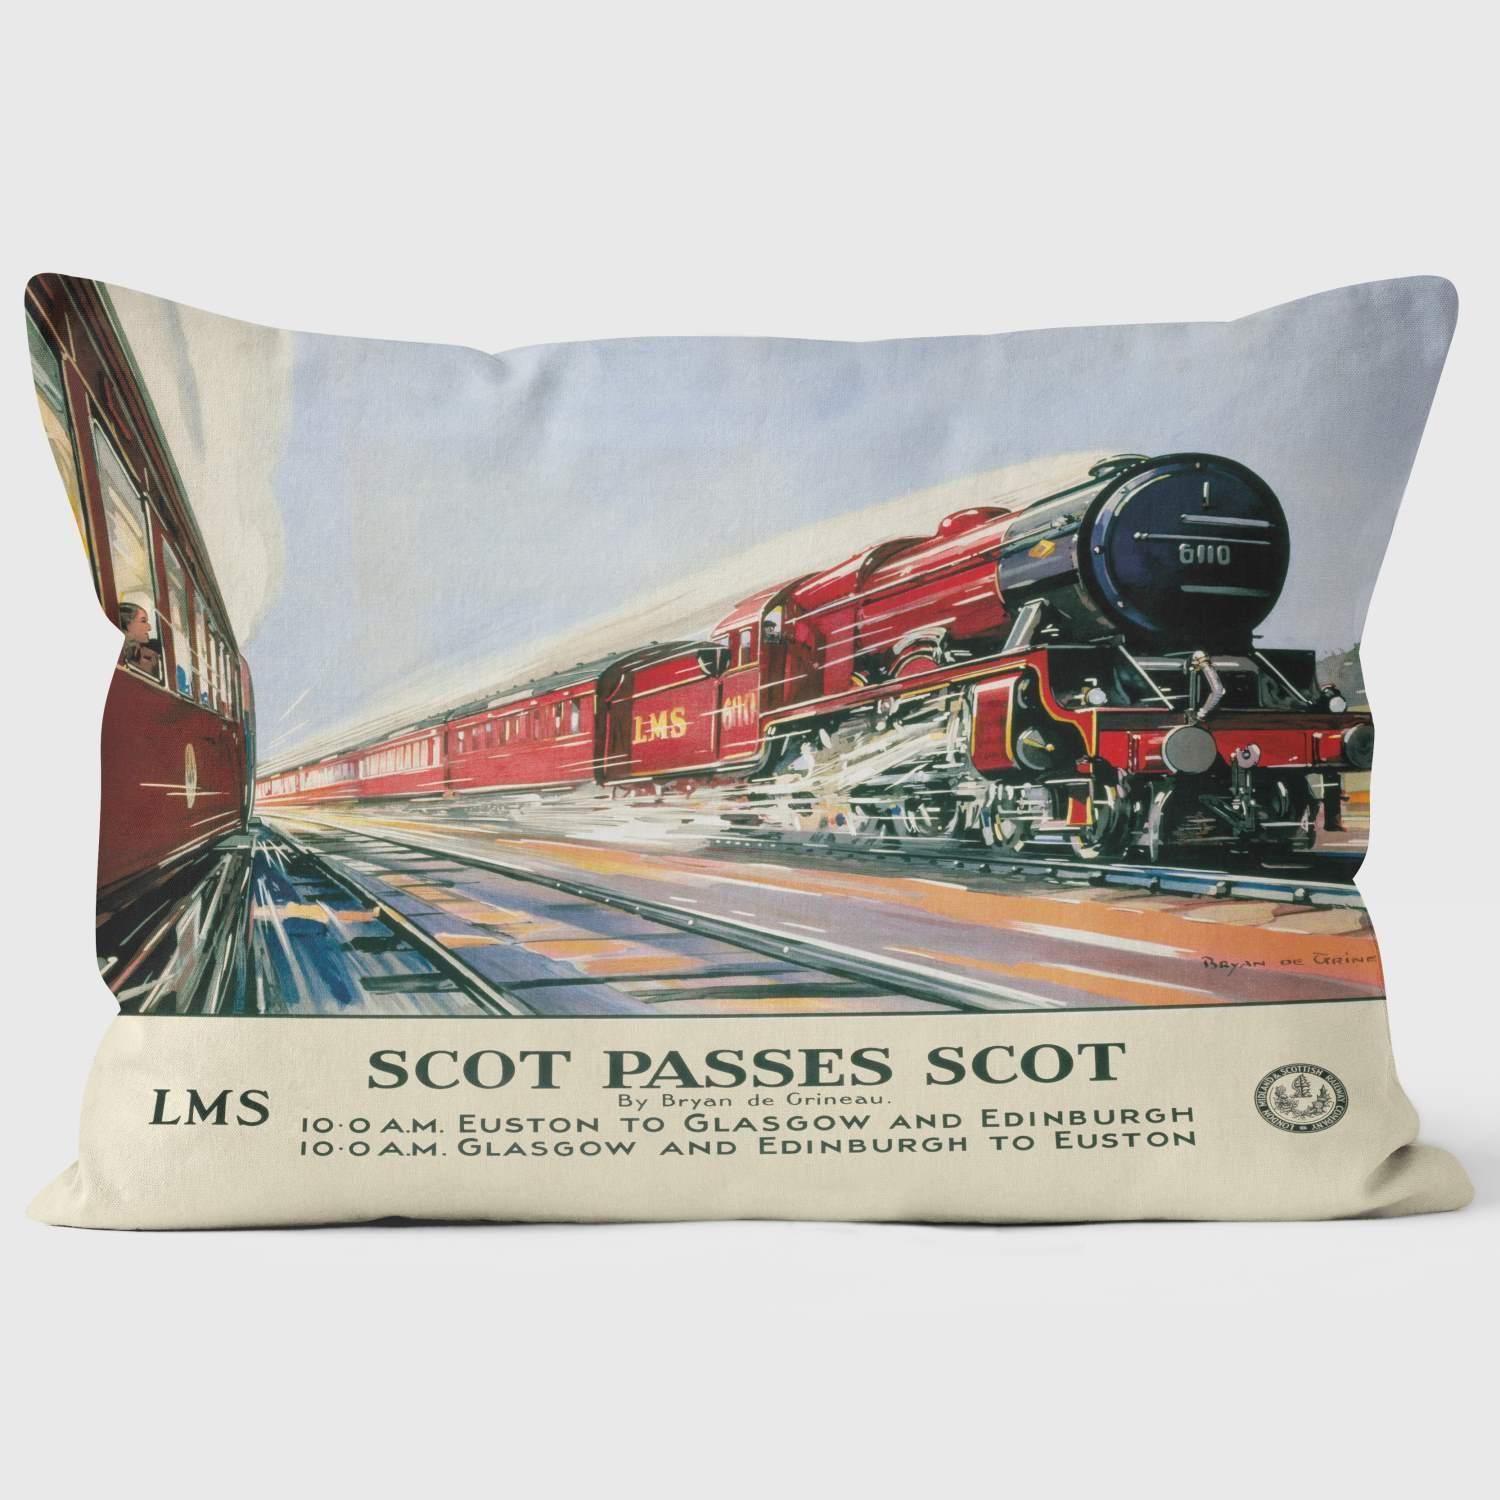 Scott passes Scott - National Railway Musuem Cushion - Handmade Cushions UK - WeLoveCushions